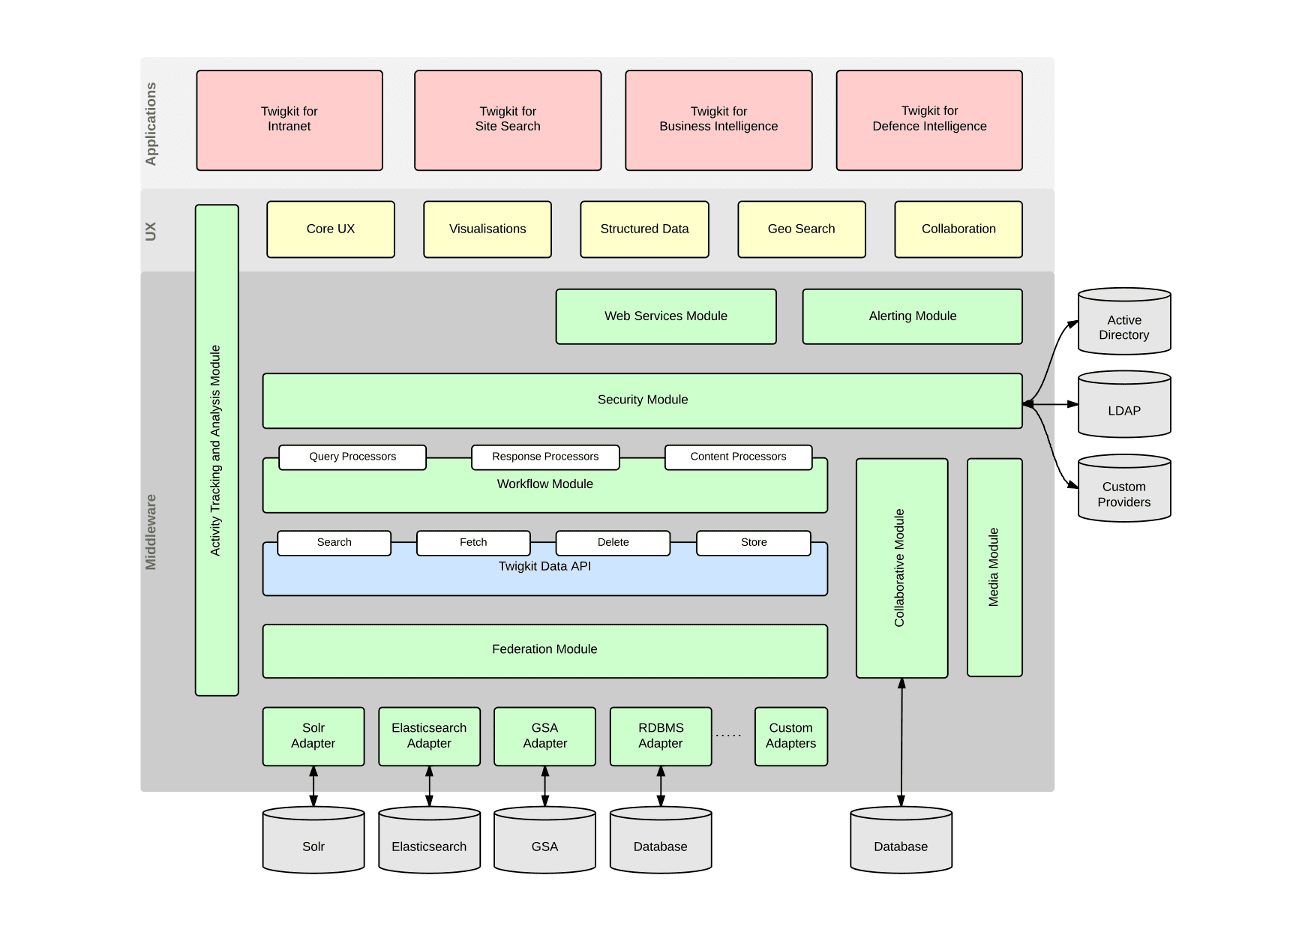 architecture diagram